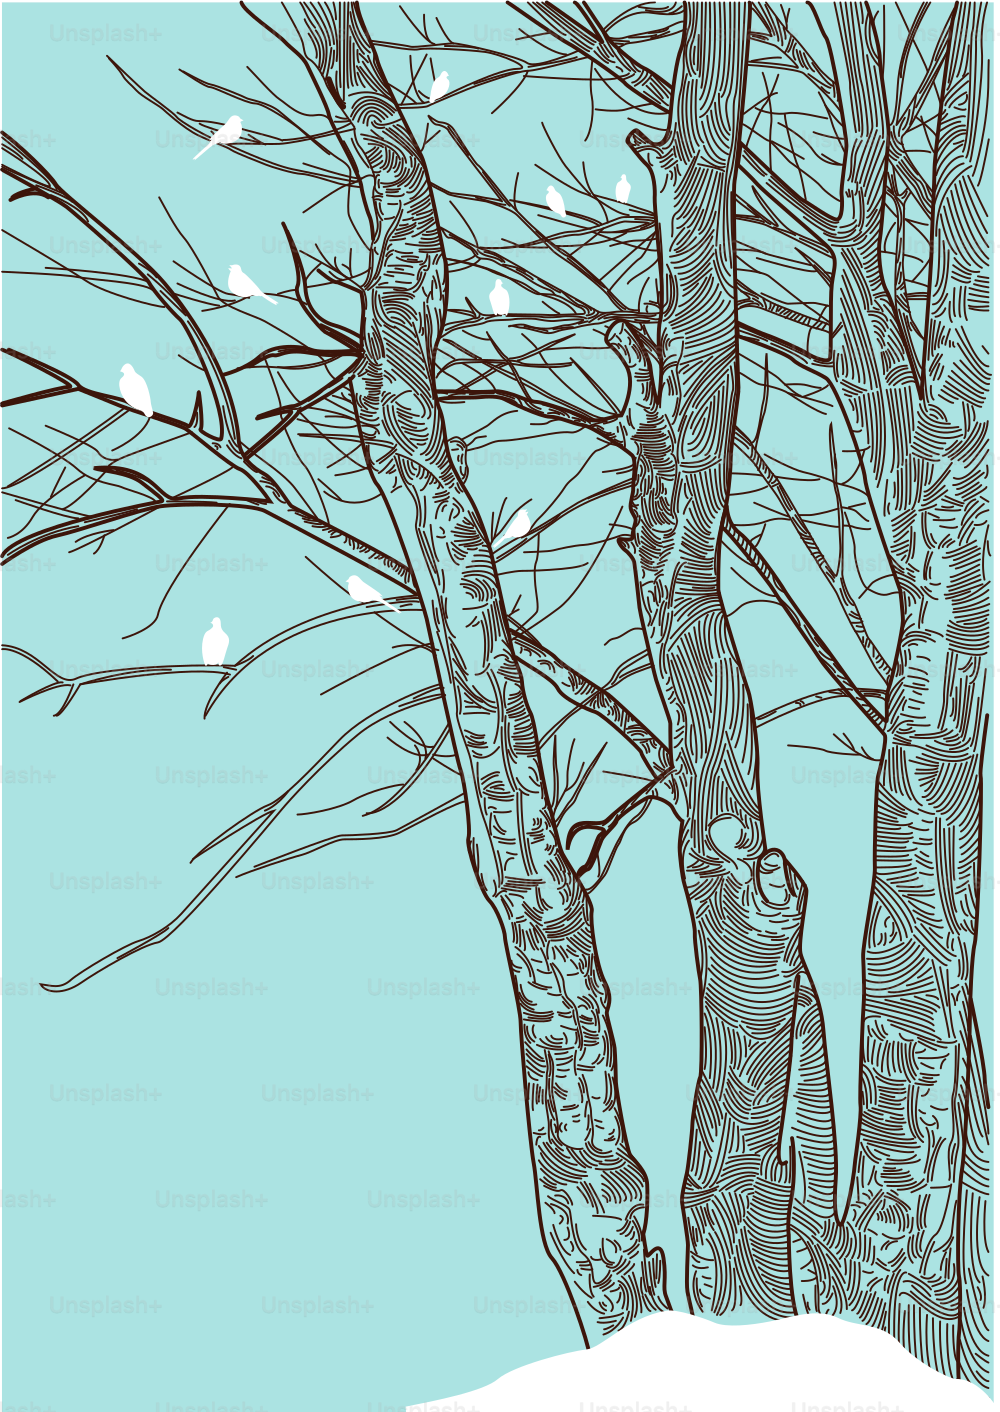 Los árboles despojados y estoicos proporcionan un punto de descanso para las aves invernales.